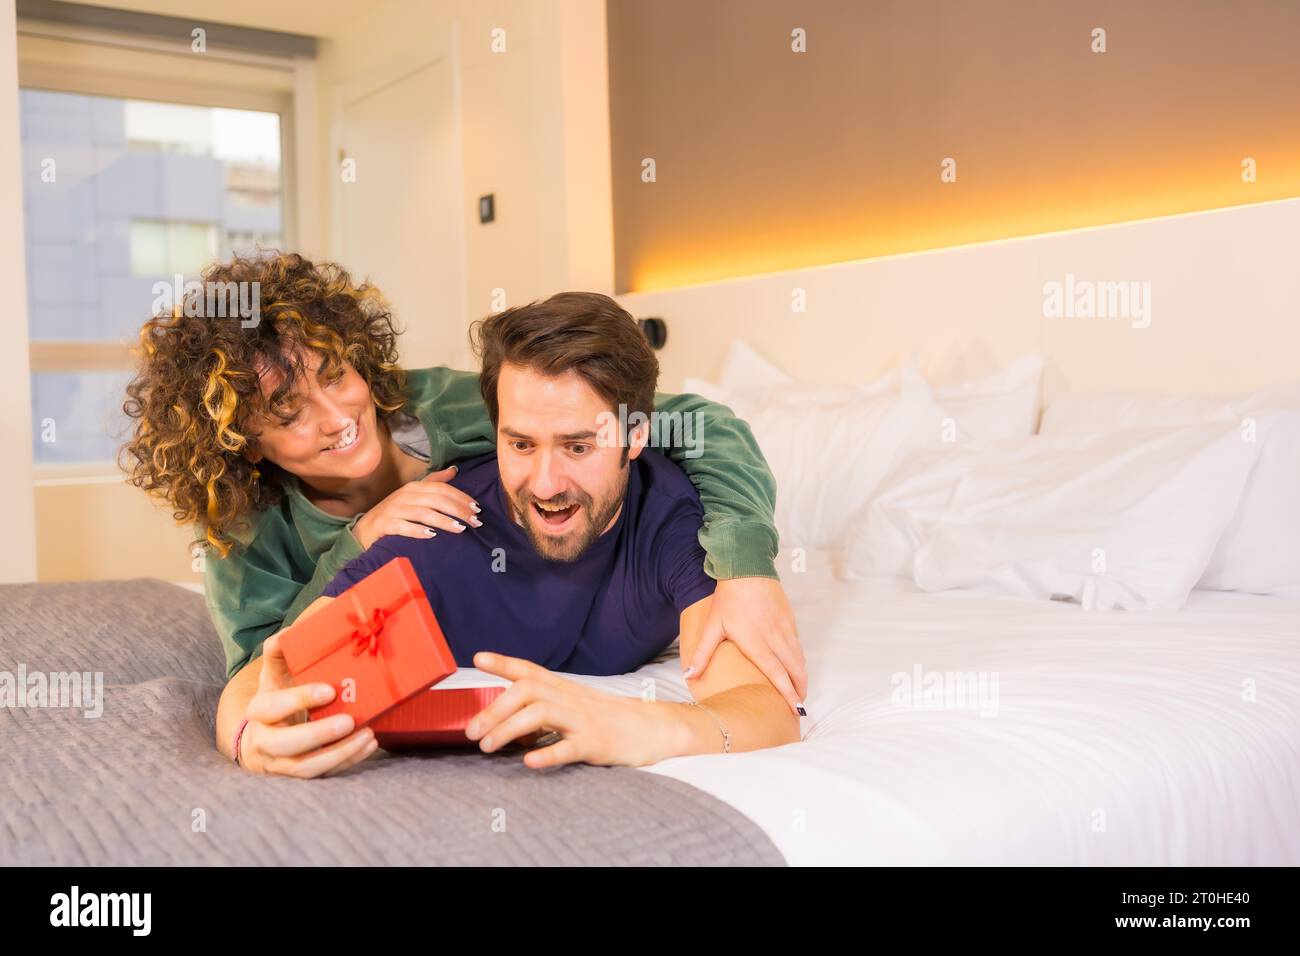 Valentinstag, an ein junges kaukasisches Paar im Pyjama auf dem Bett, die Braut gibt dem Freund eine nette Überraschung mit einem Geschenk. Mit Kopie und Stockfoto